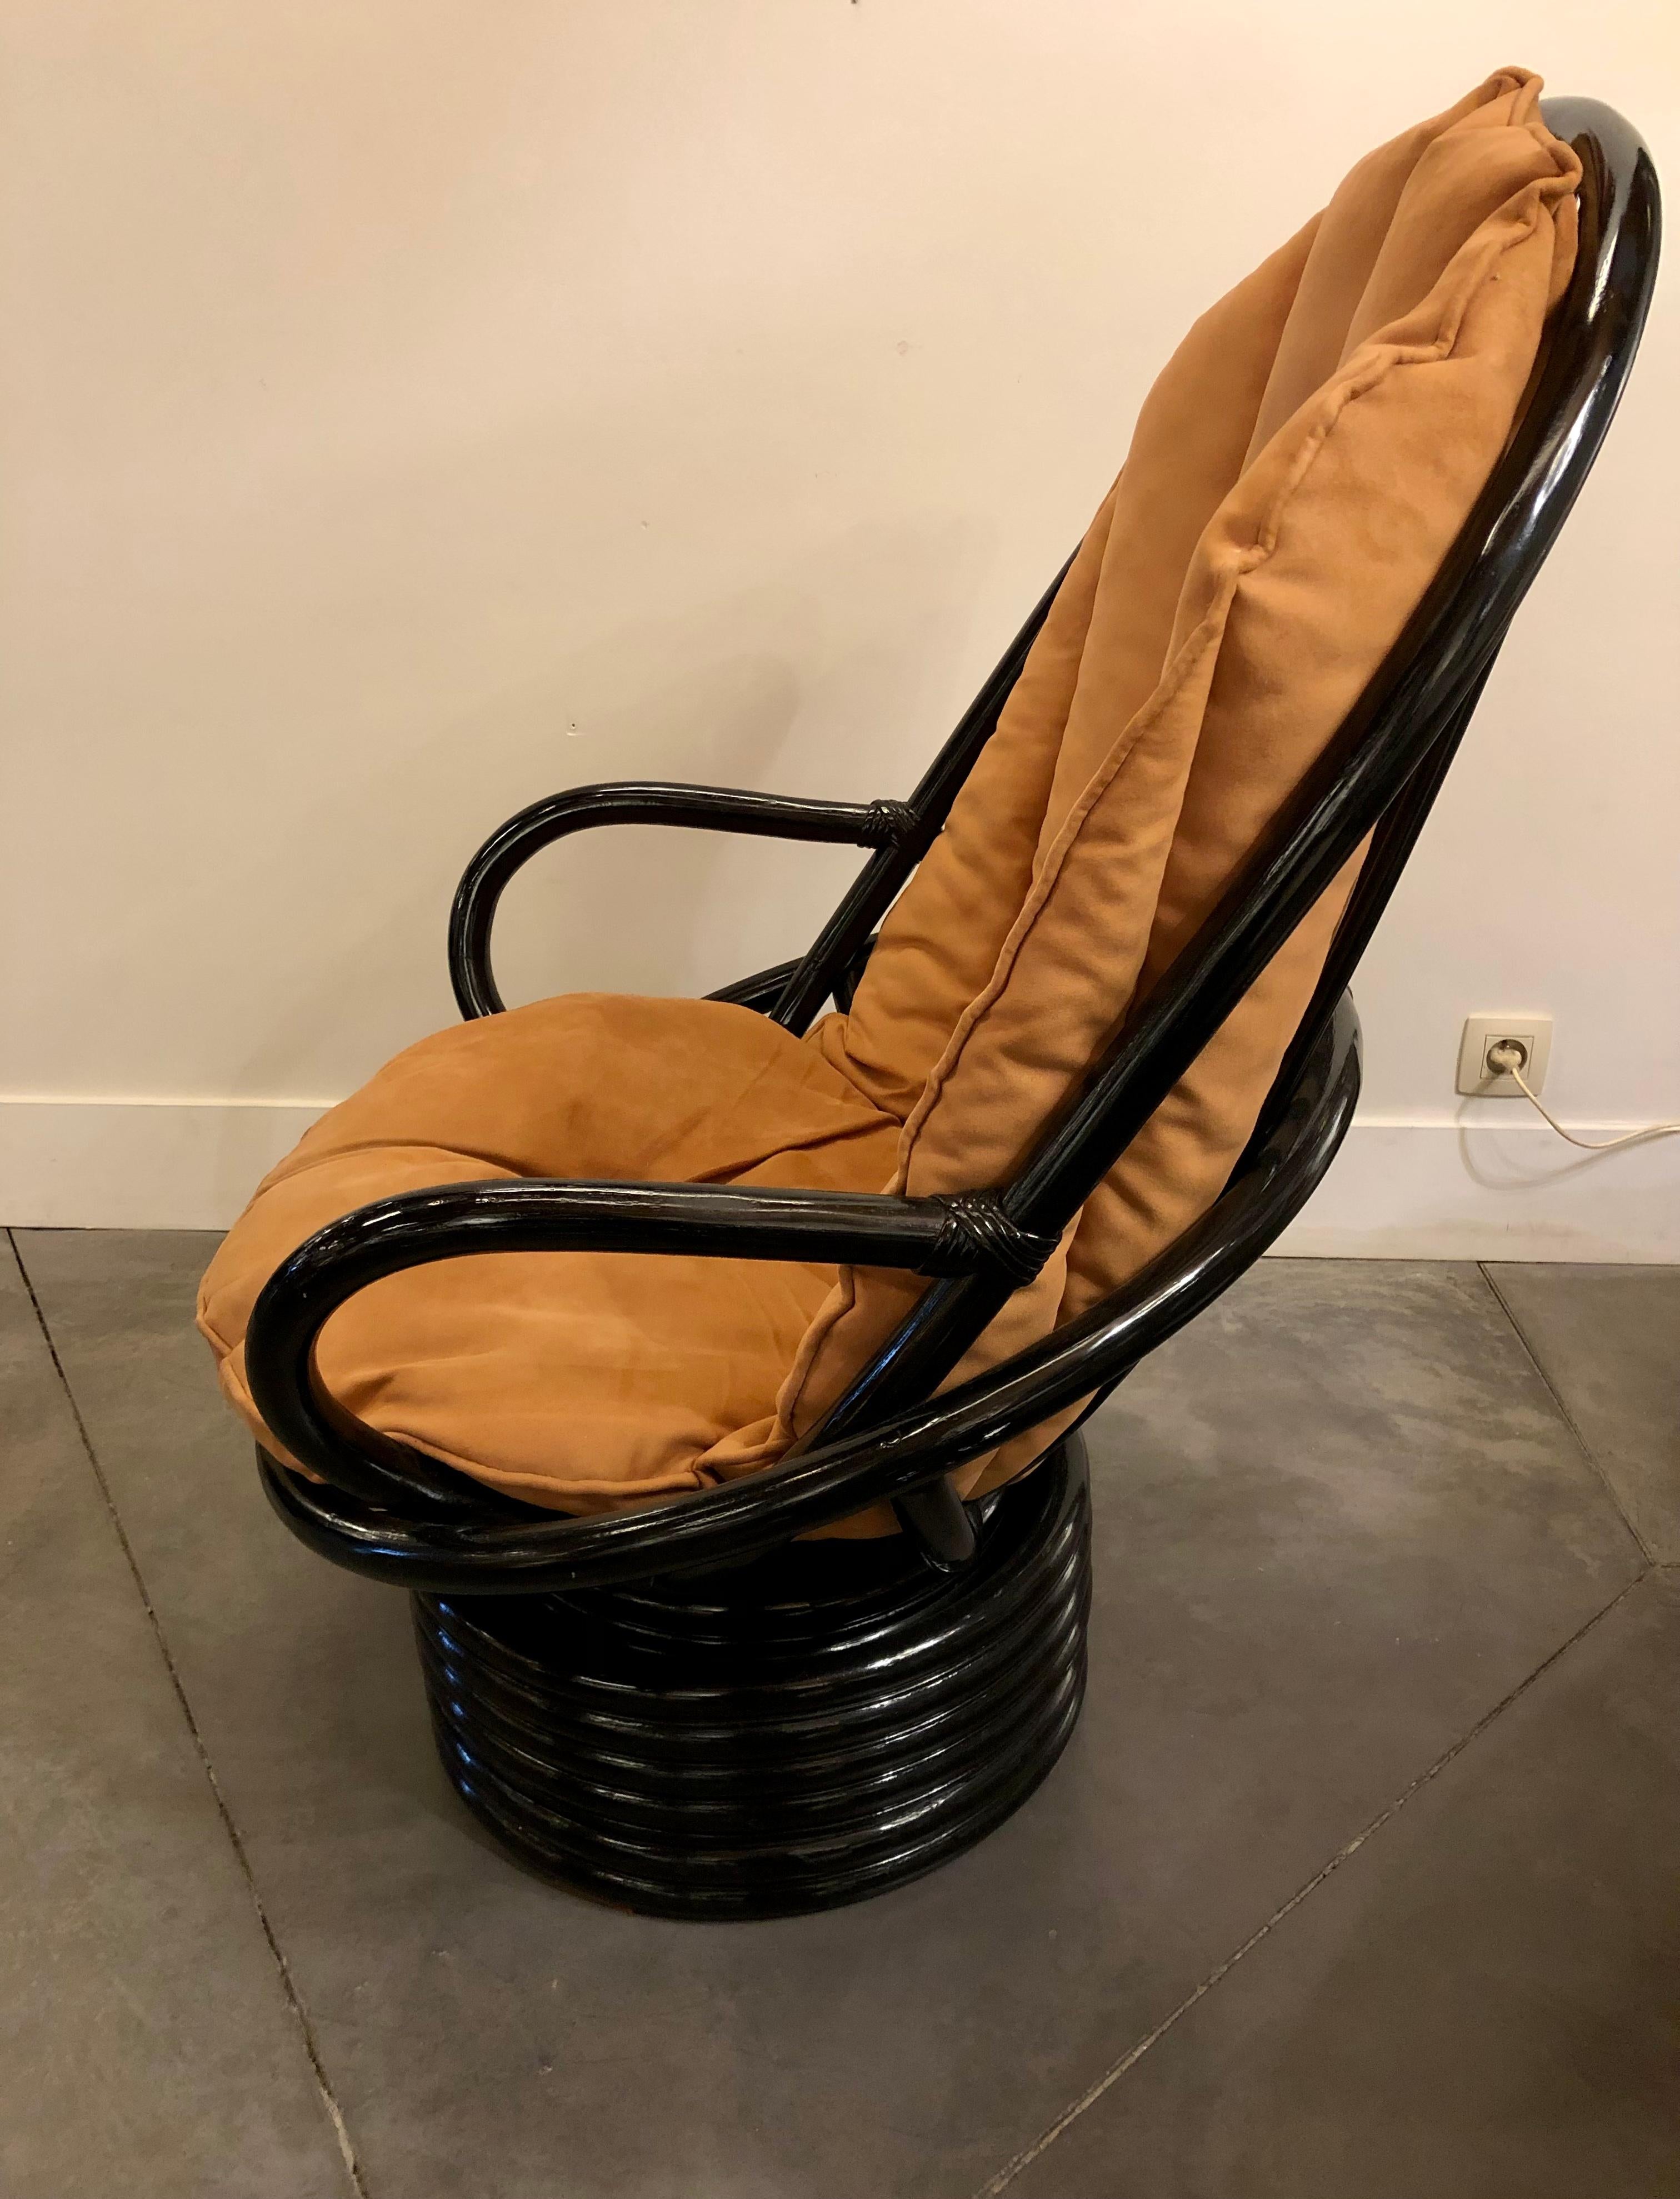 Fauteuil pivotant noir très confortable avec coussins en daim marron clair en bon état.
Il y a une éraflure dans la peinture noire sur l'arc supérieur du dossier de la chaise.